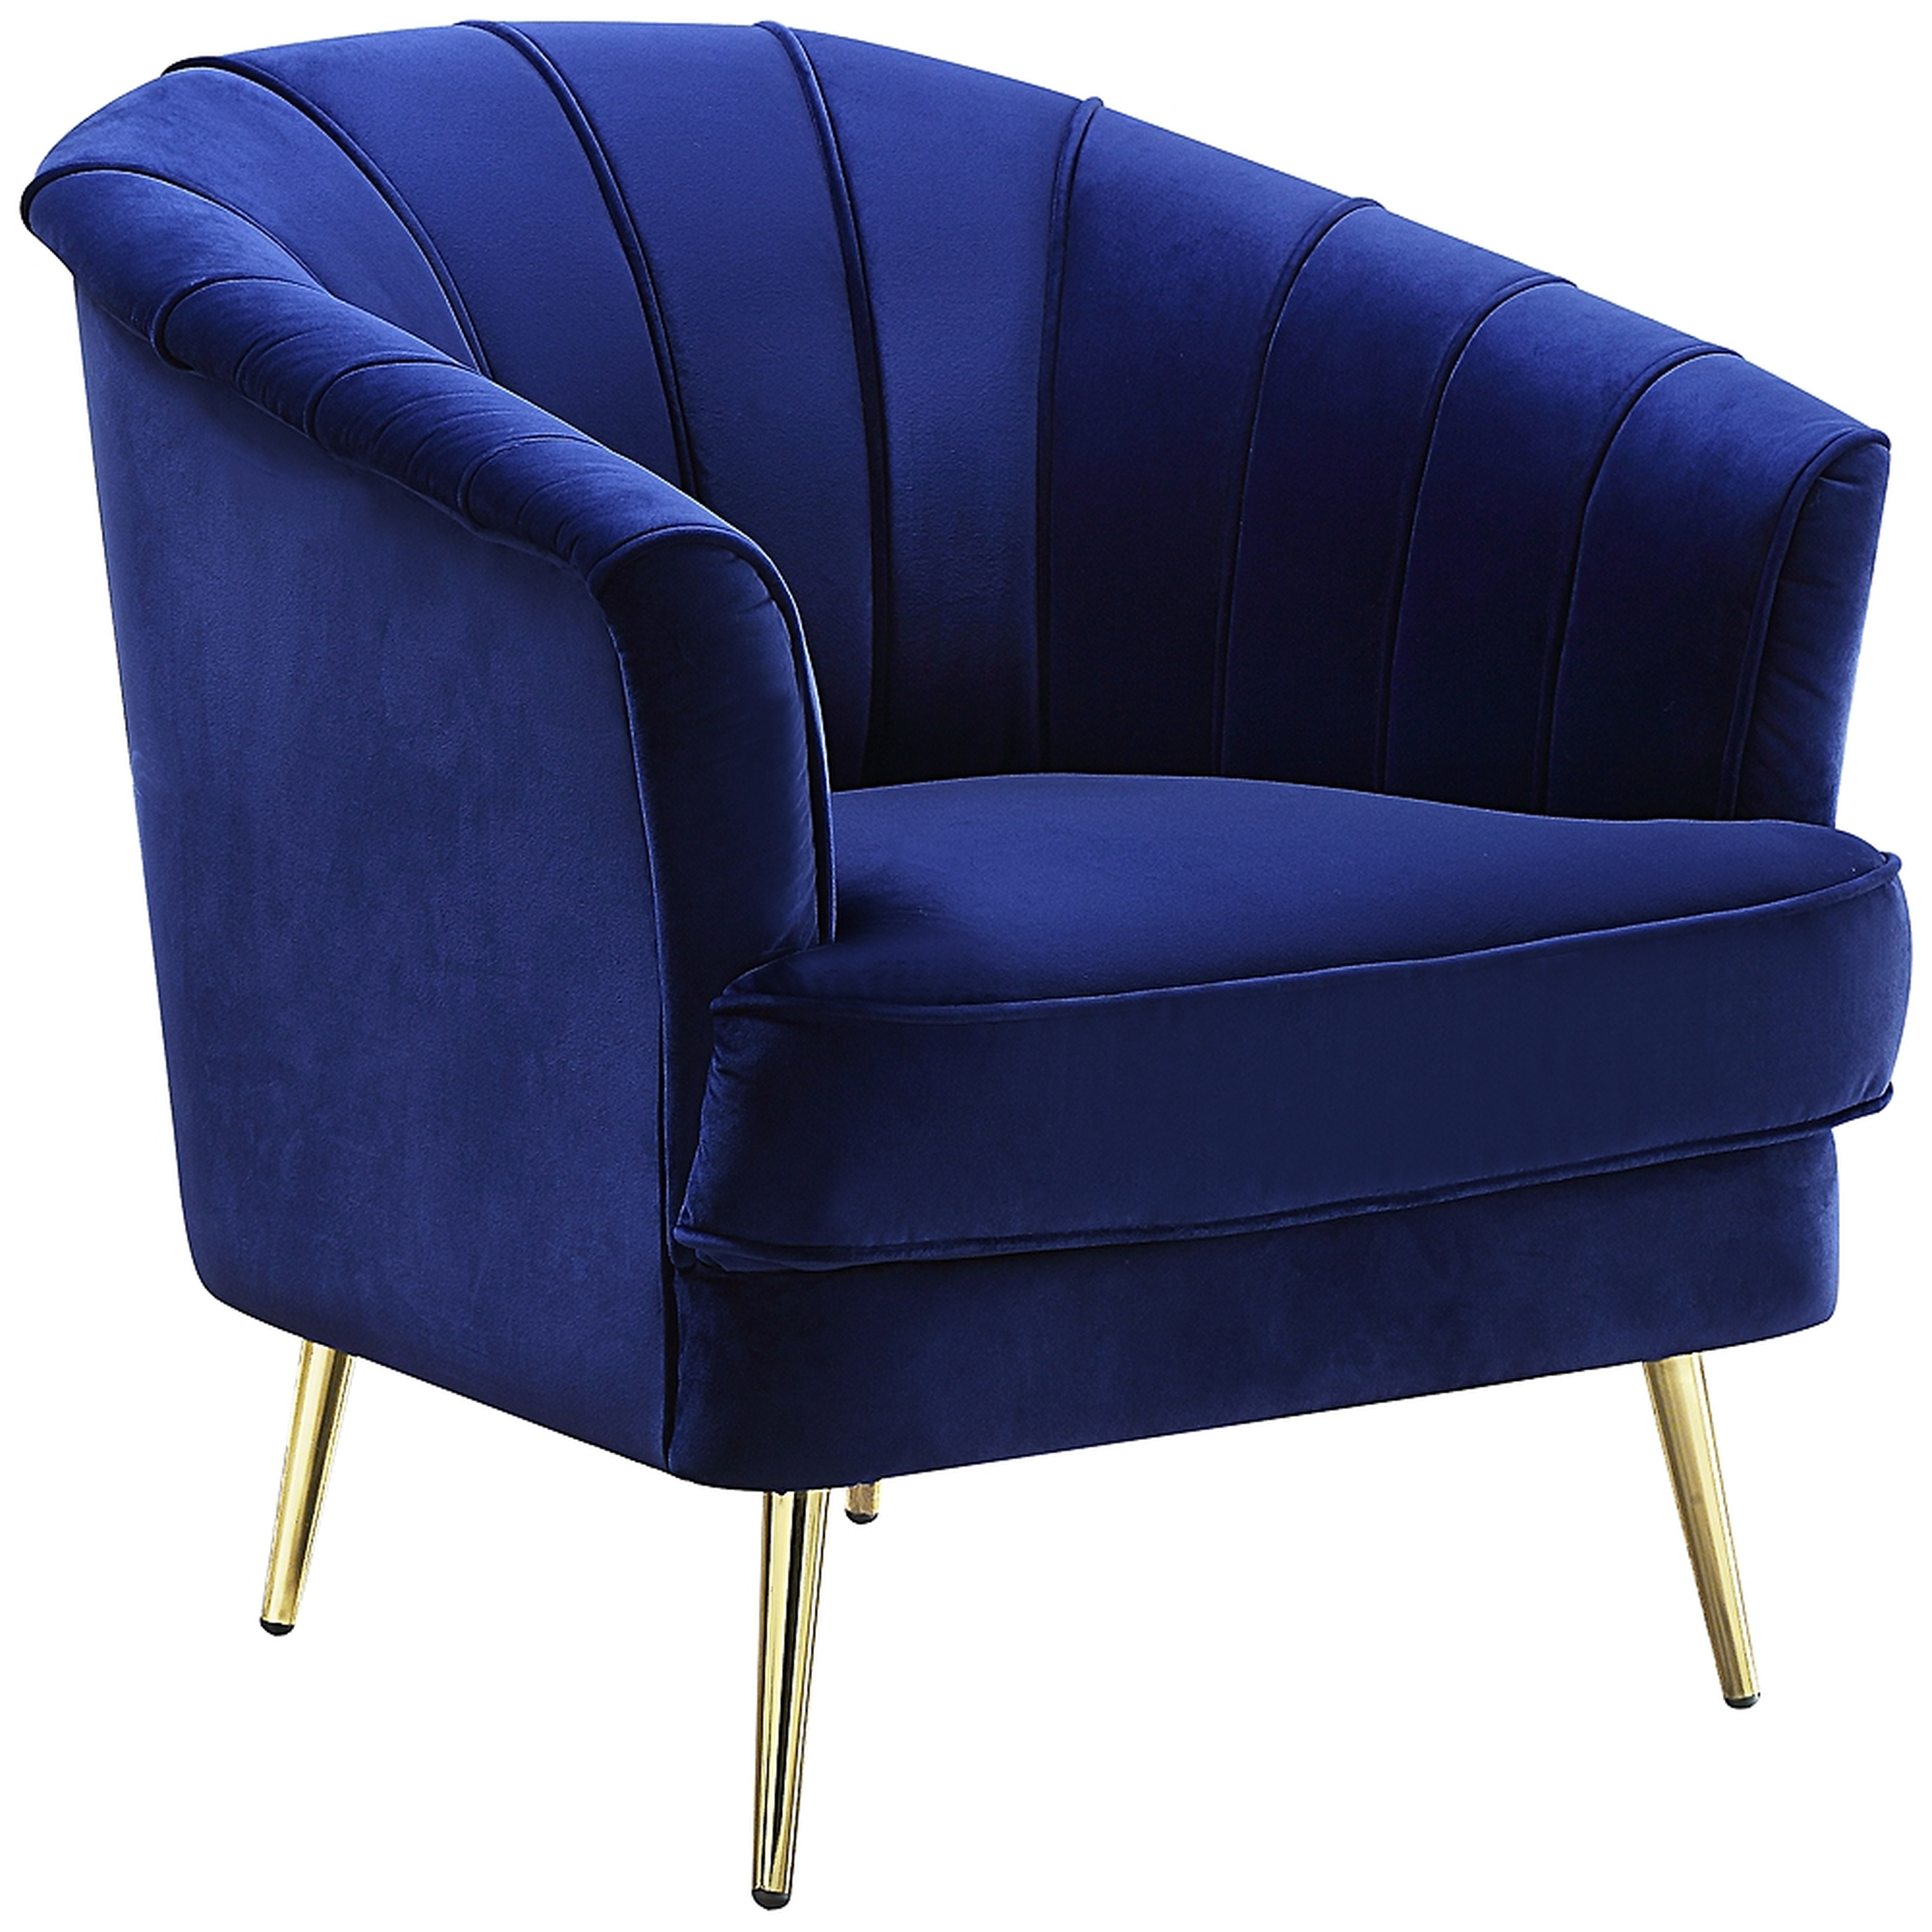 Eivor Blue Velvet Tufted Accent Chair - Style # 534Y0 - Lamps Plus